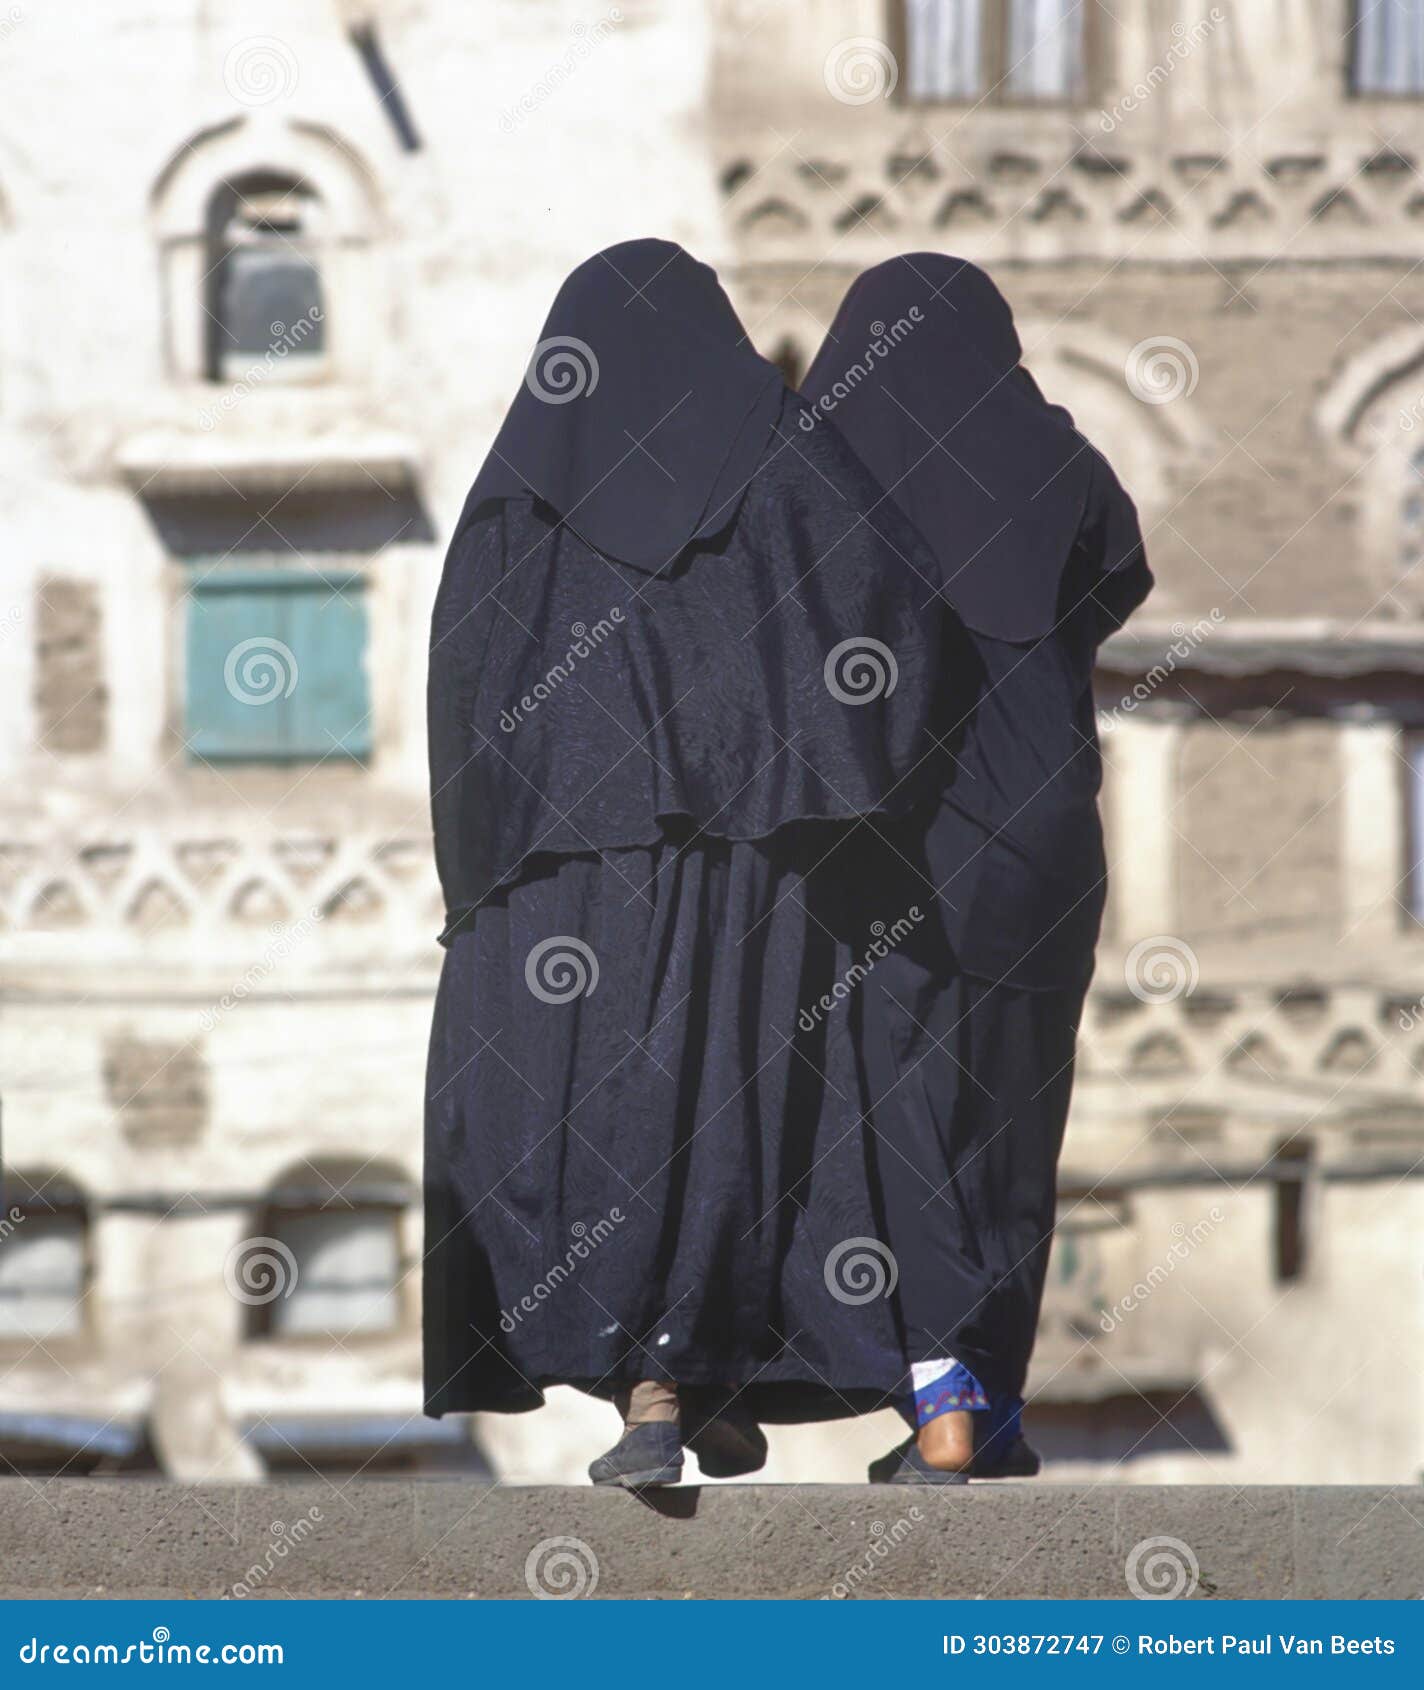 two women in a black burka